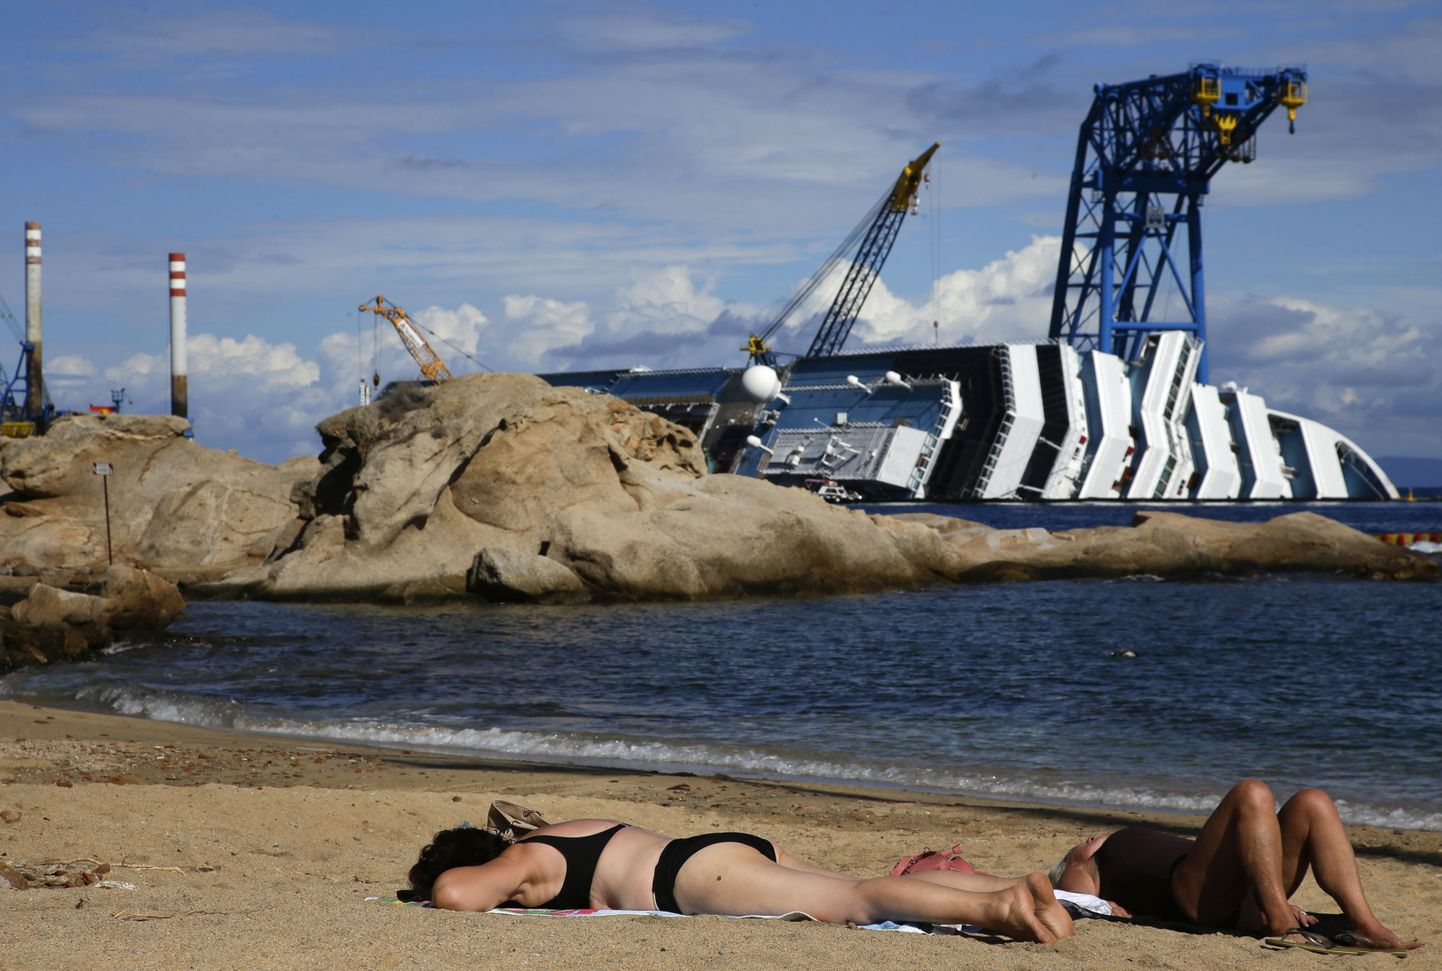 Päevitajad rannas kruiisilaeva Costa Concordia vraki lähedal.